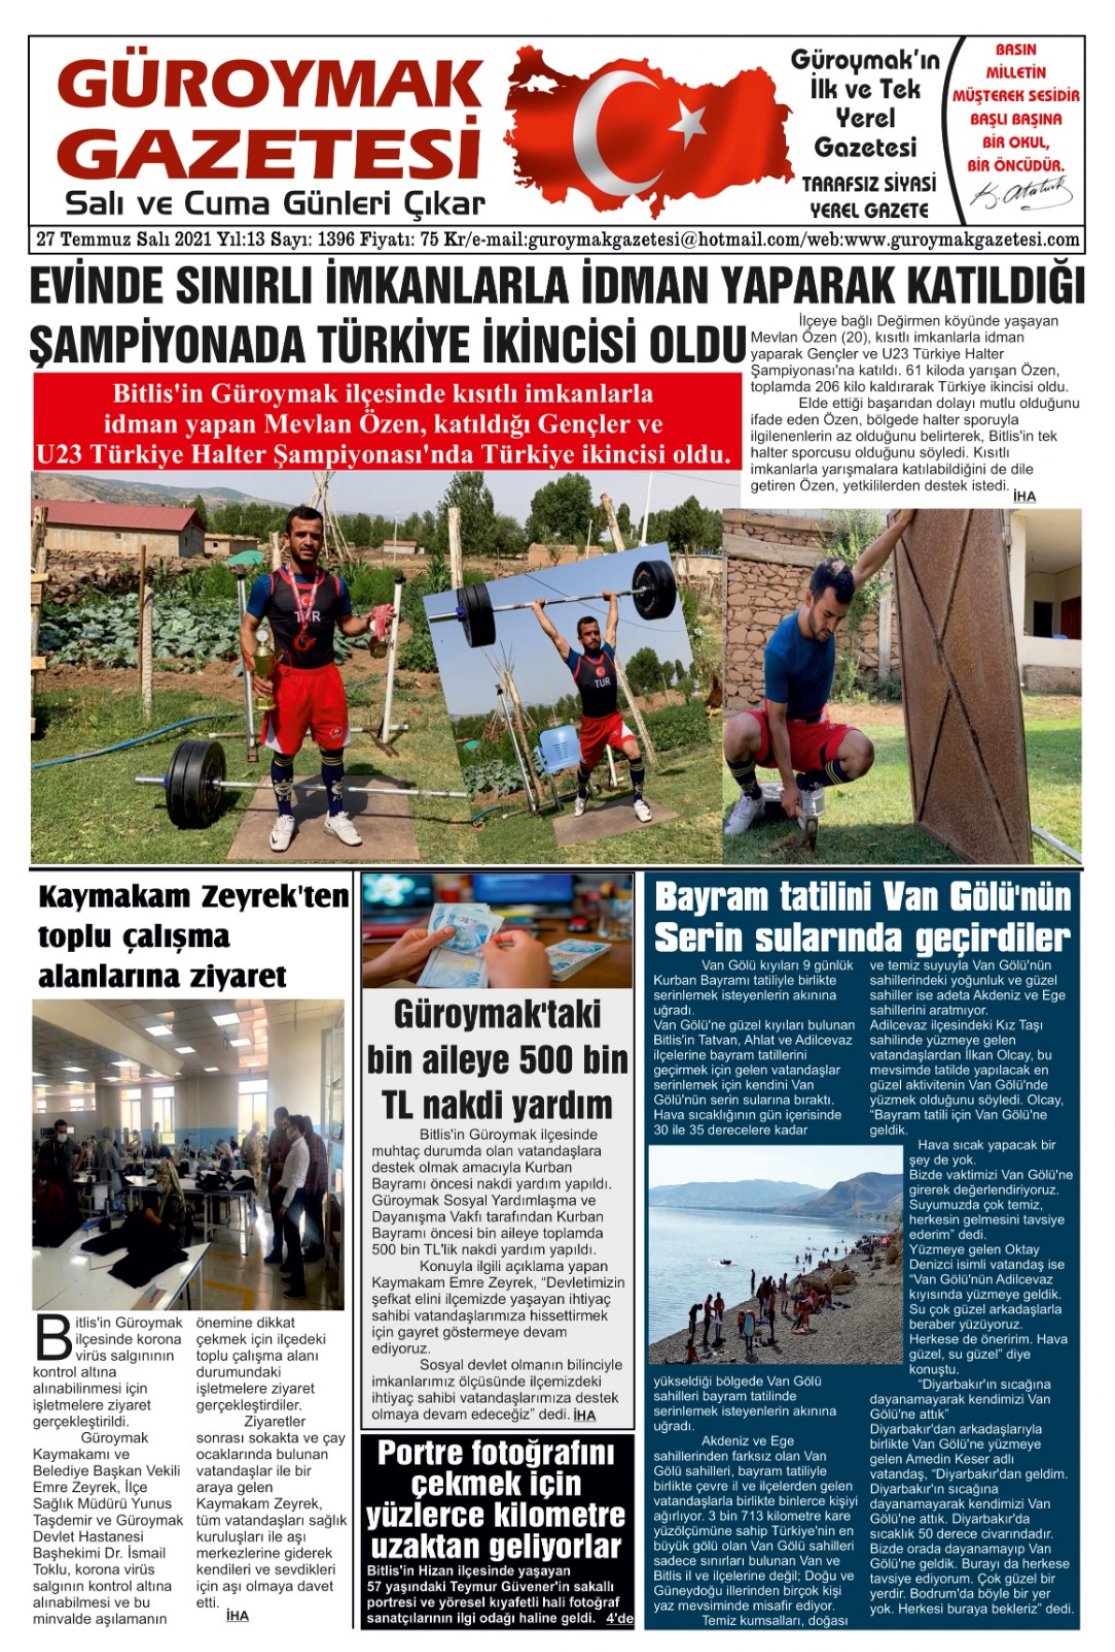 Güroymak Gazetesi WhatsApp Image 2021-07-26 at 18.20.52.jpeg Sayılı Gazete Küpürü